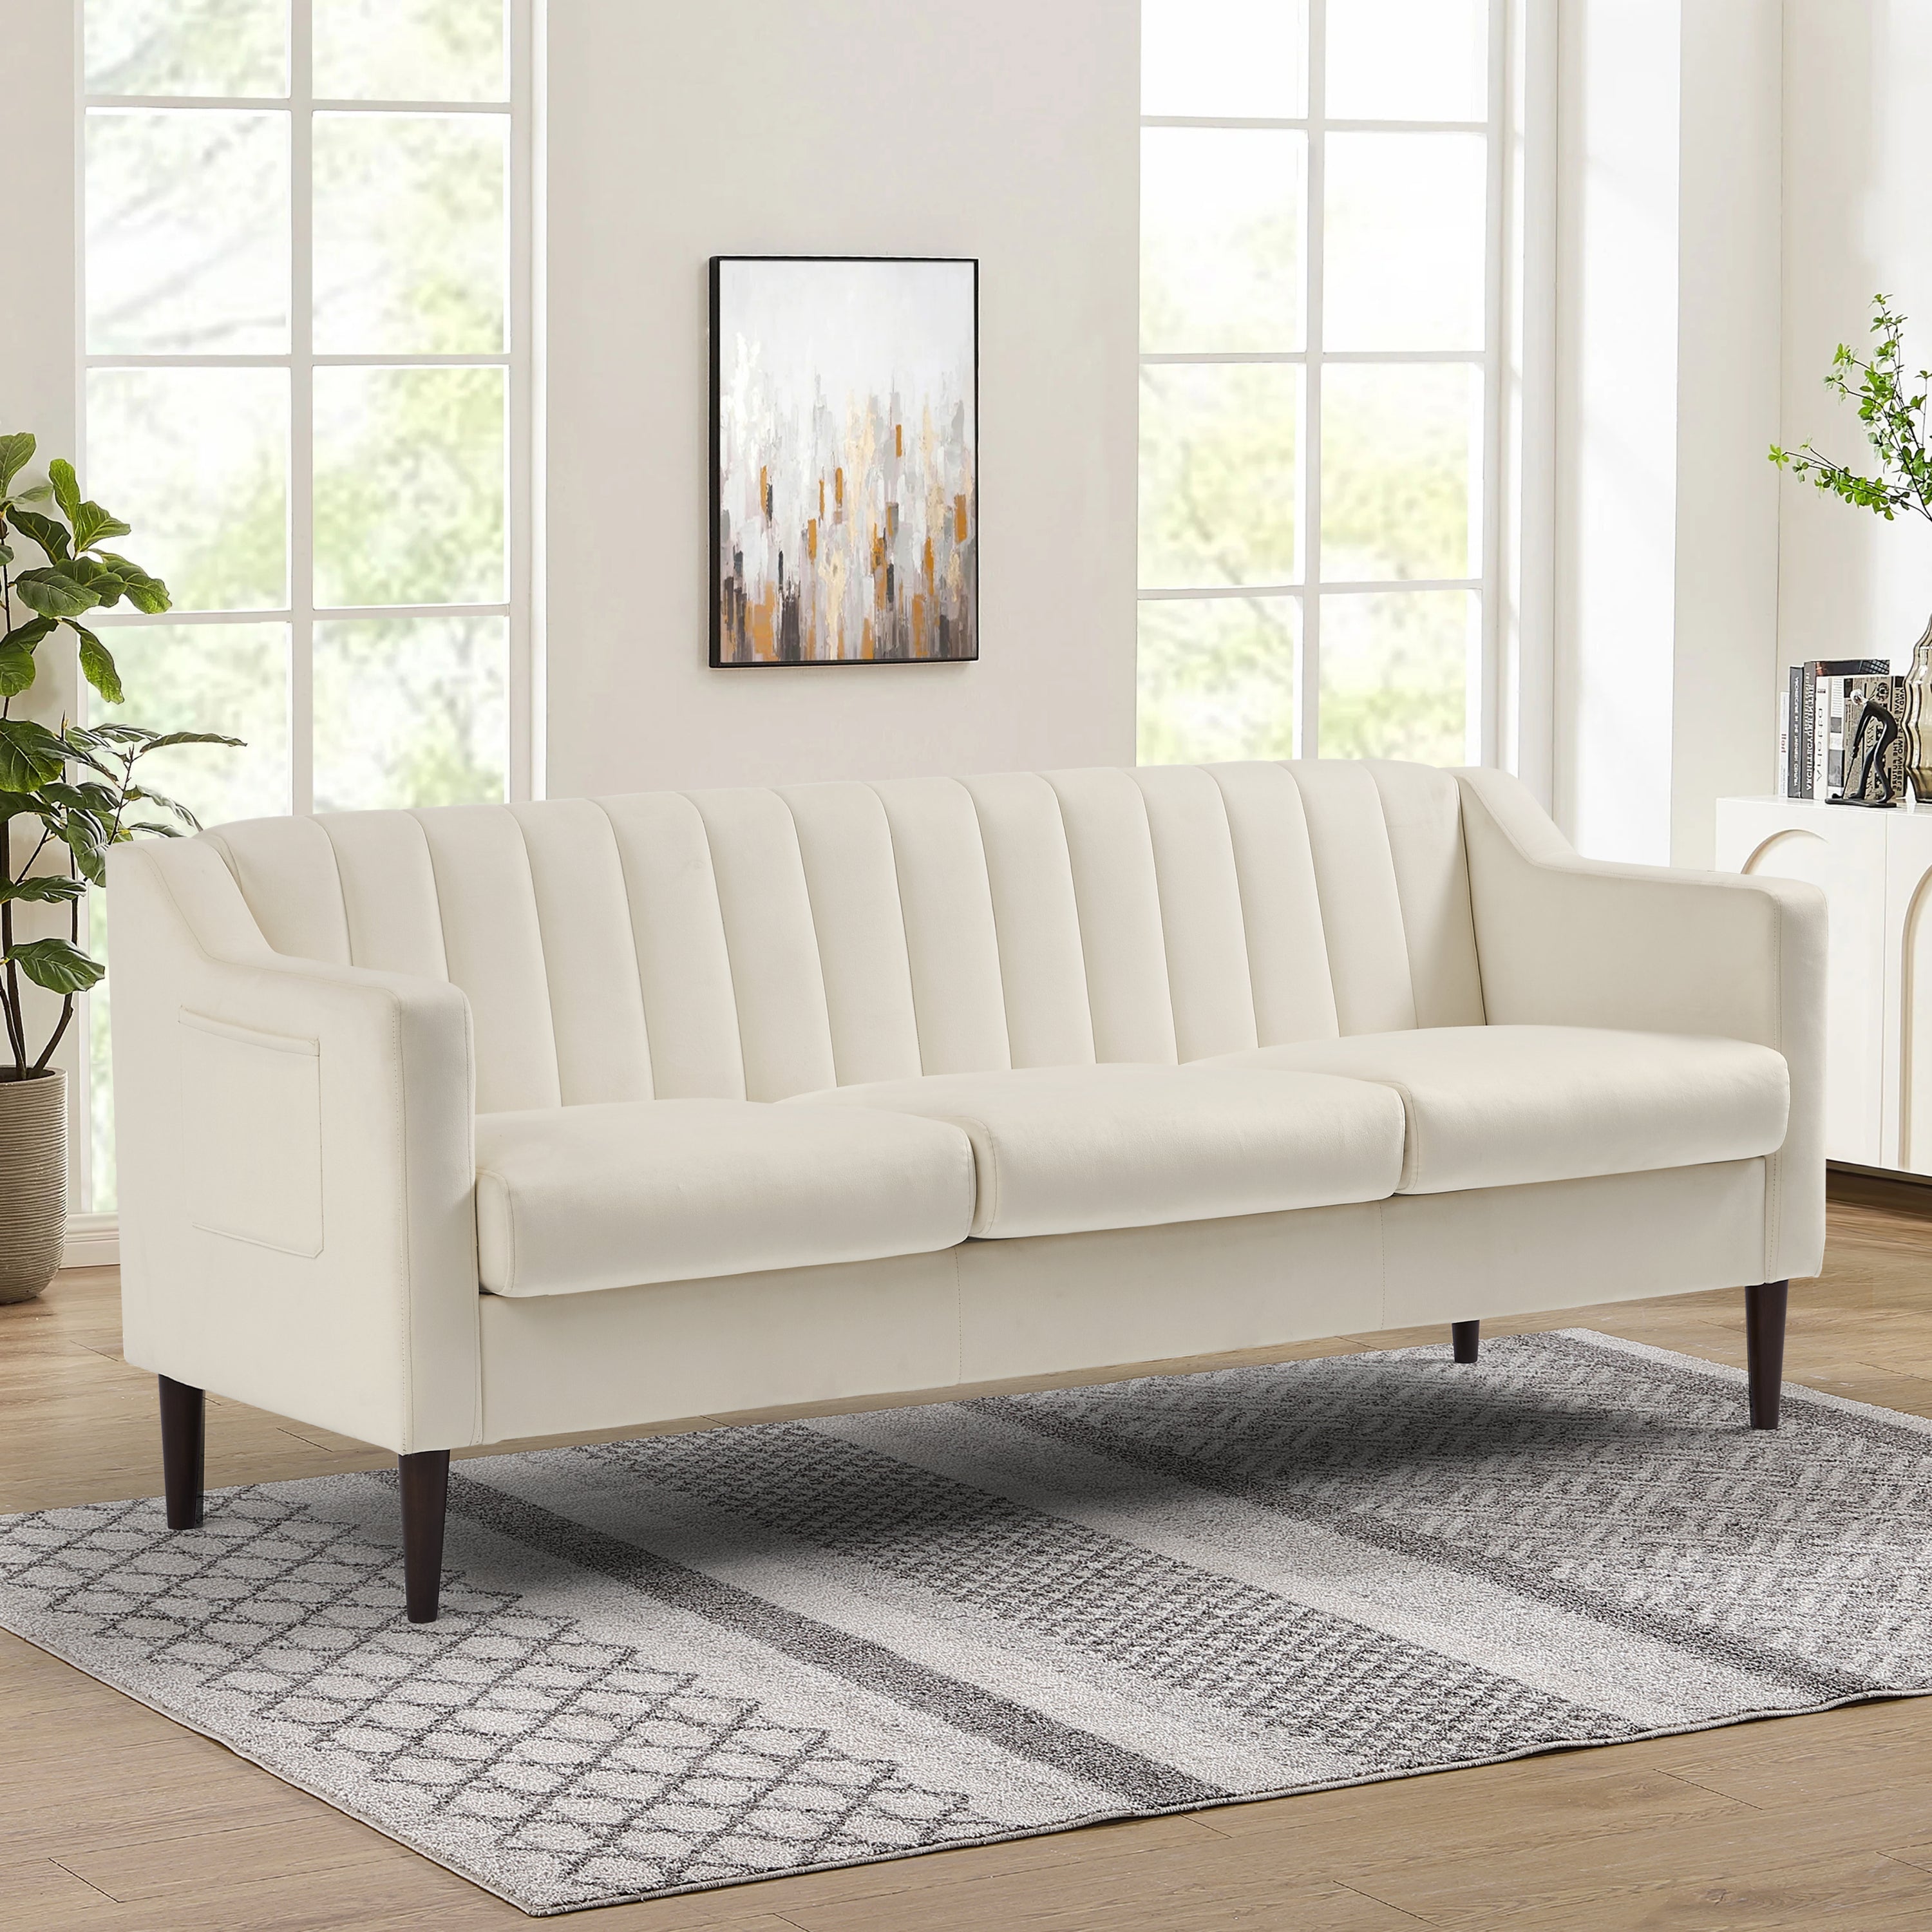 77" off white Velvet Upholstered Modern Sofa with Channel Tufted Back